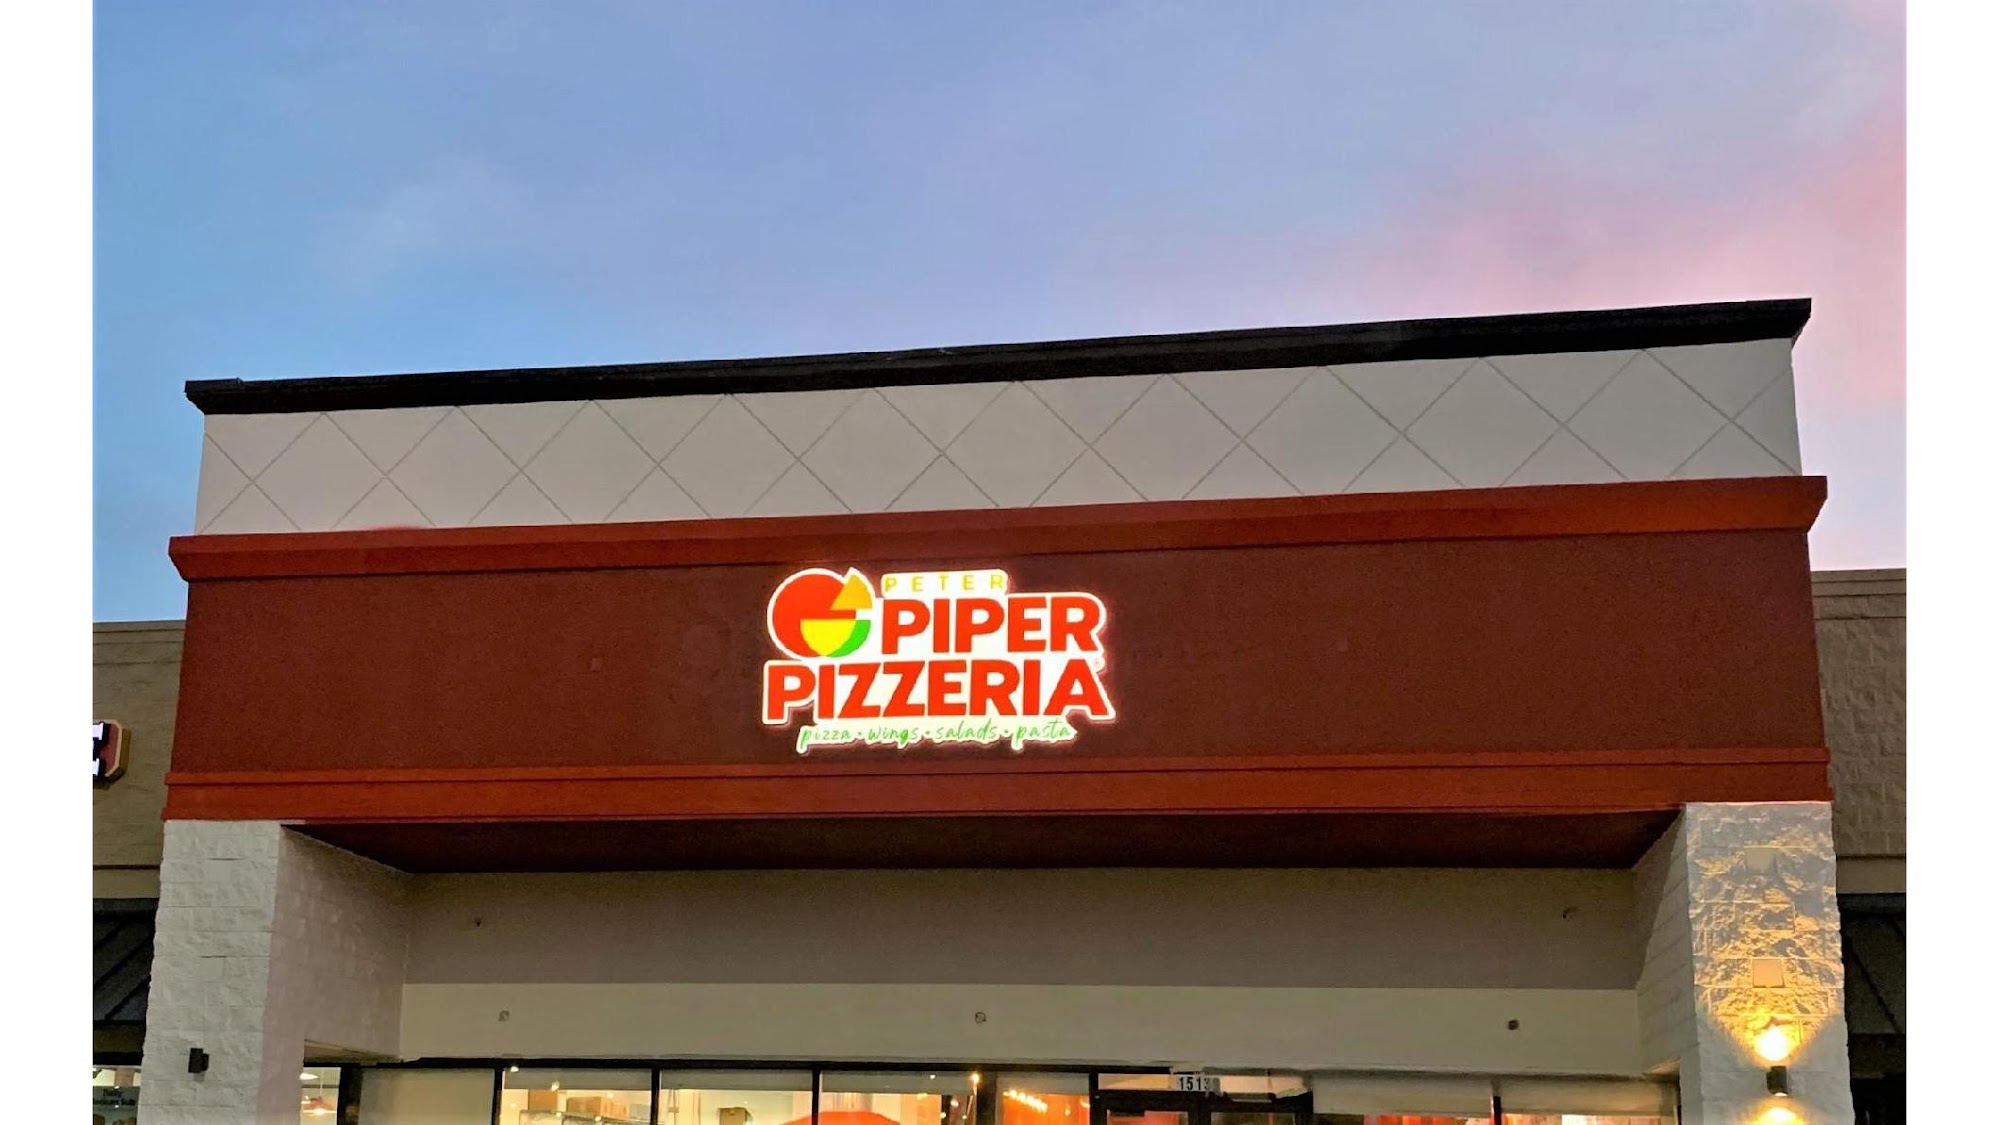 Peter Piper Pizzeria